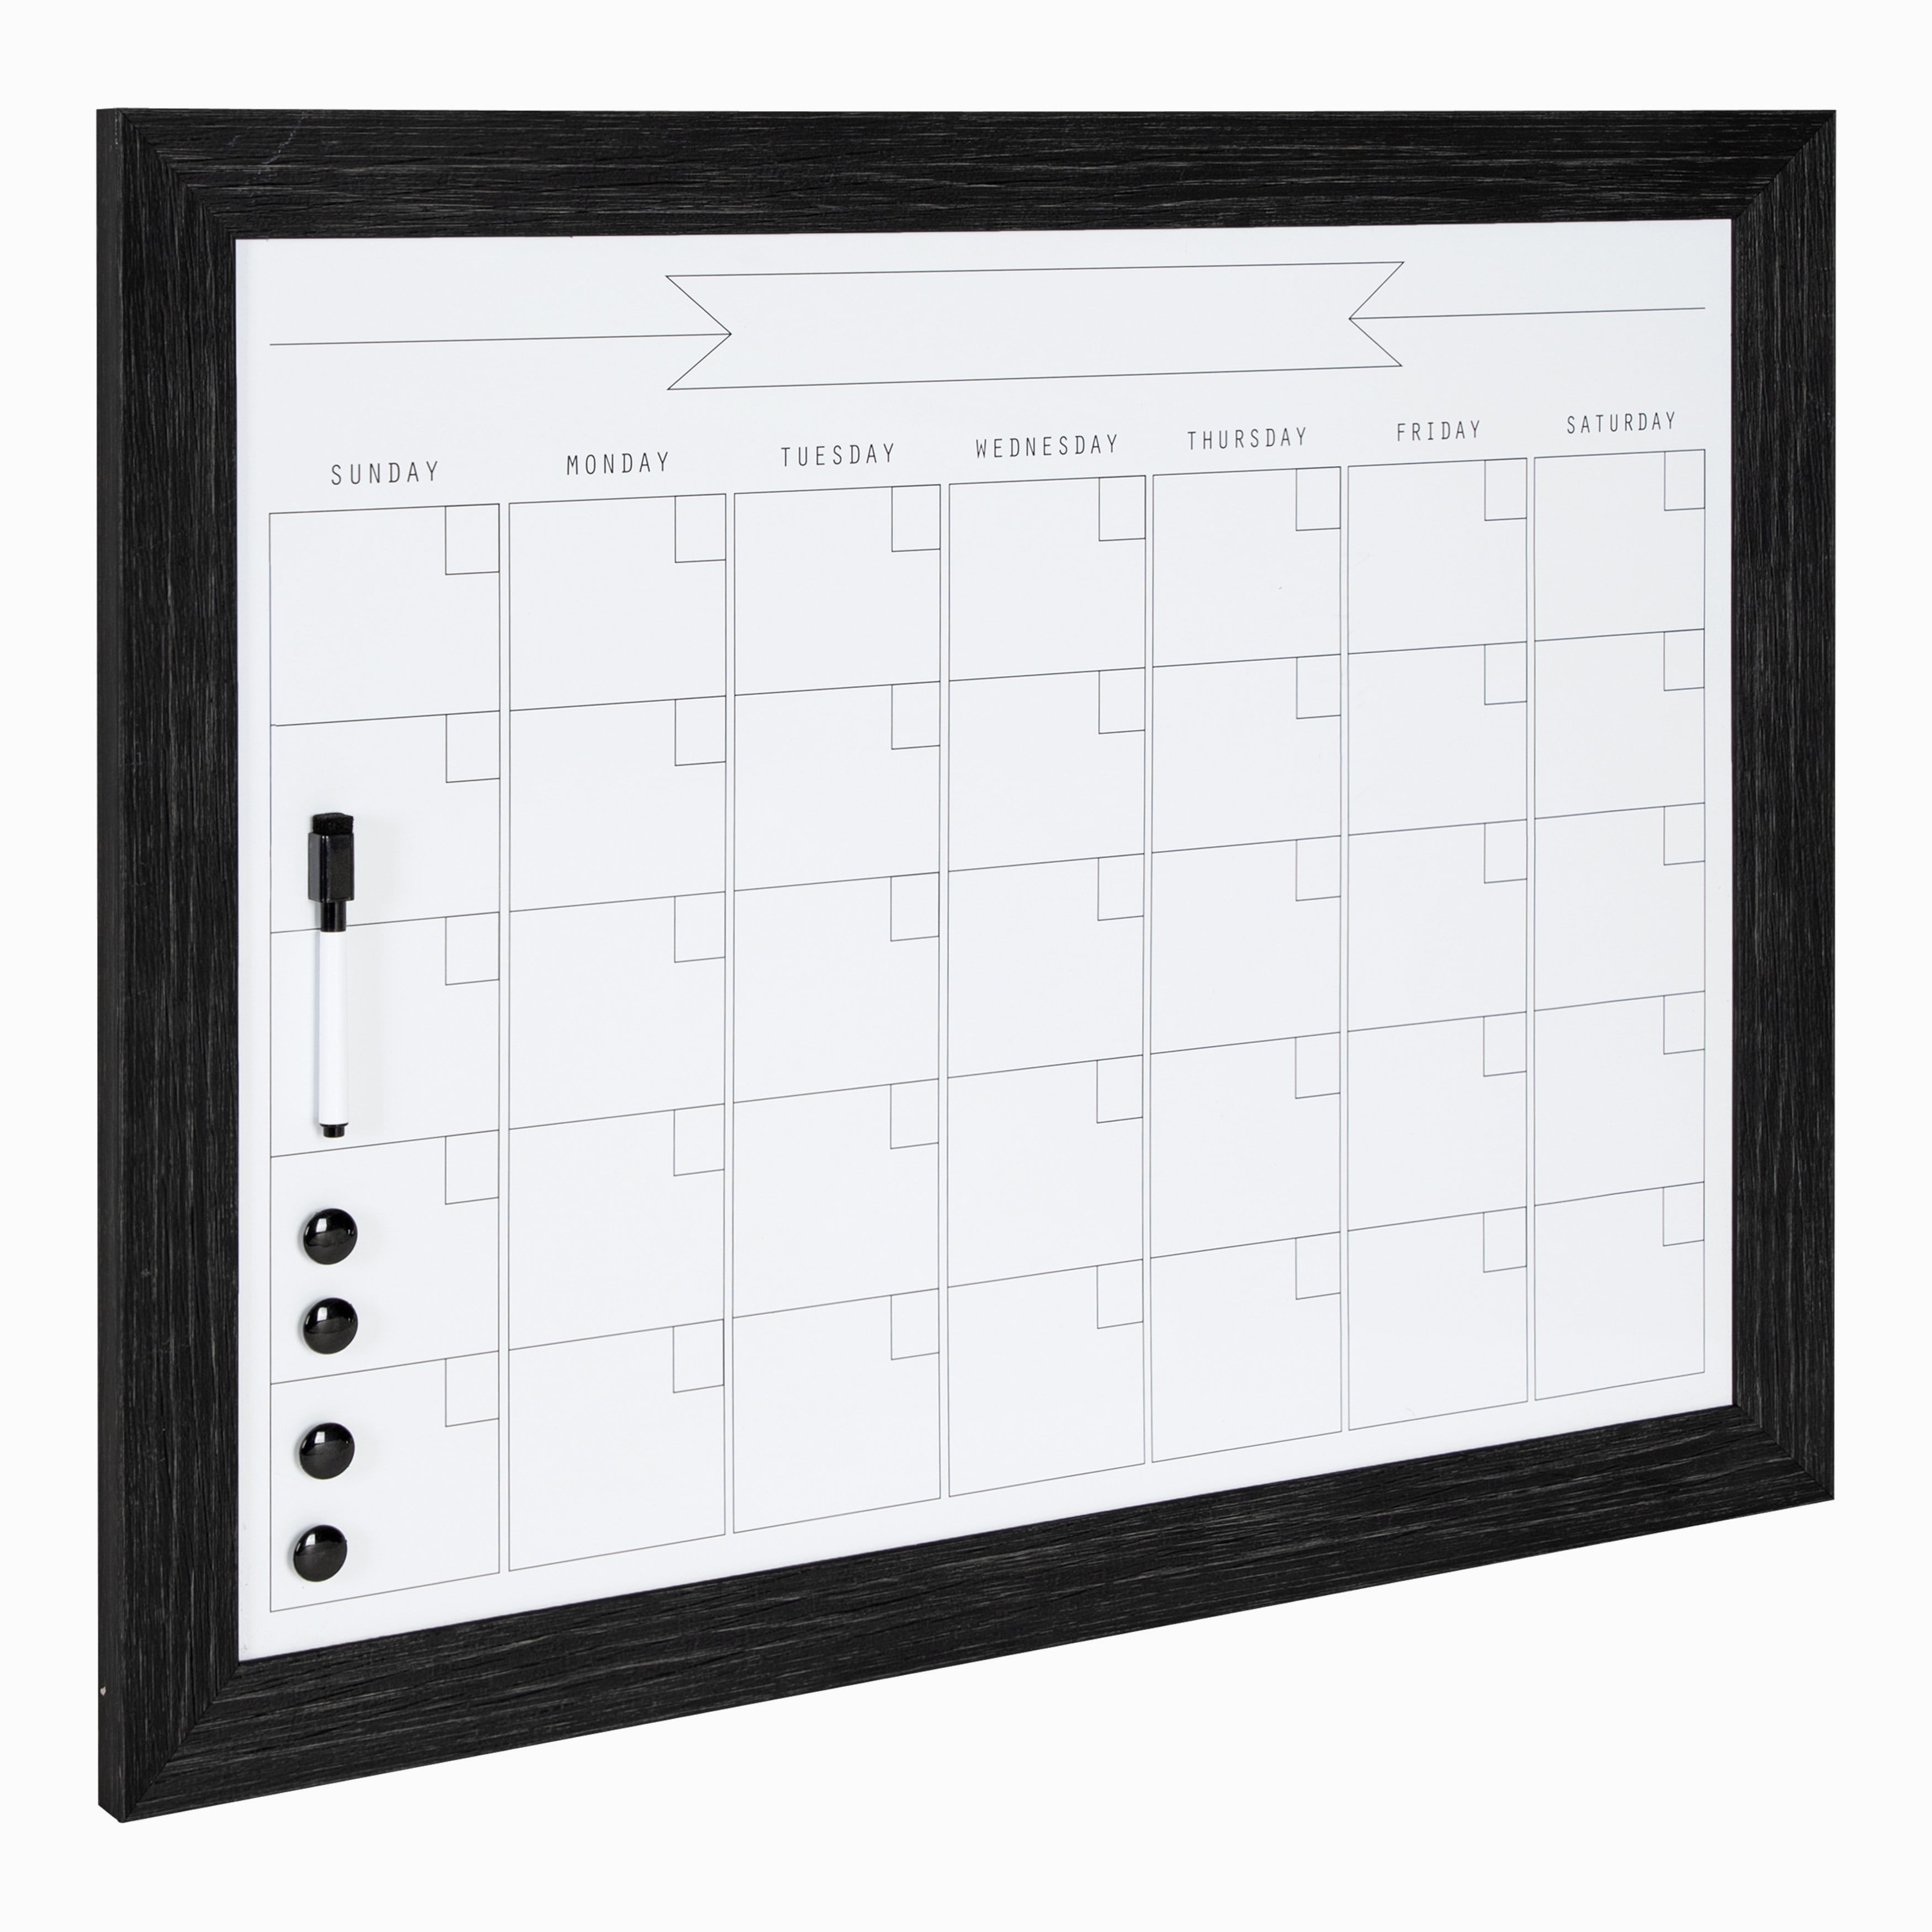 DesignOvation Beatrice Framed Dry Erase Monthly Calendar, 23